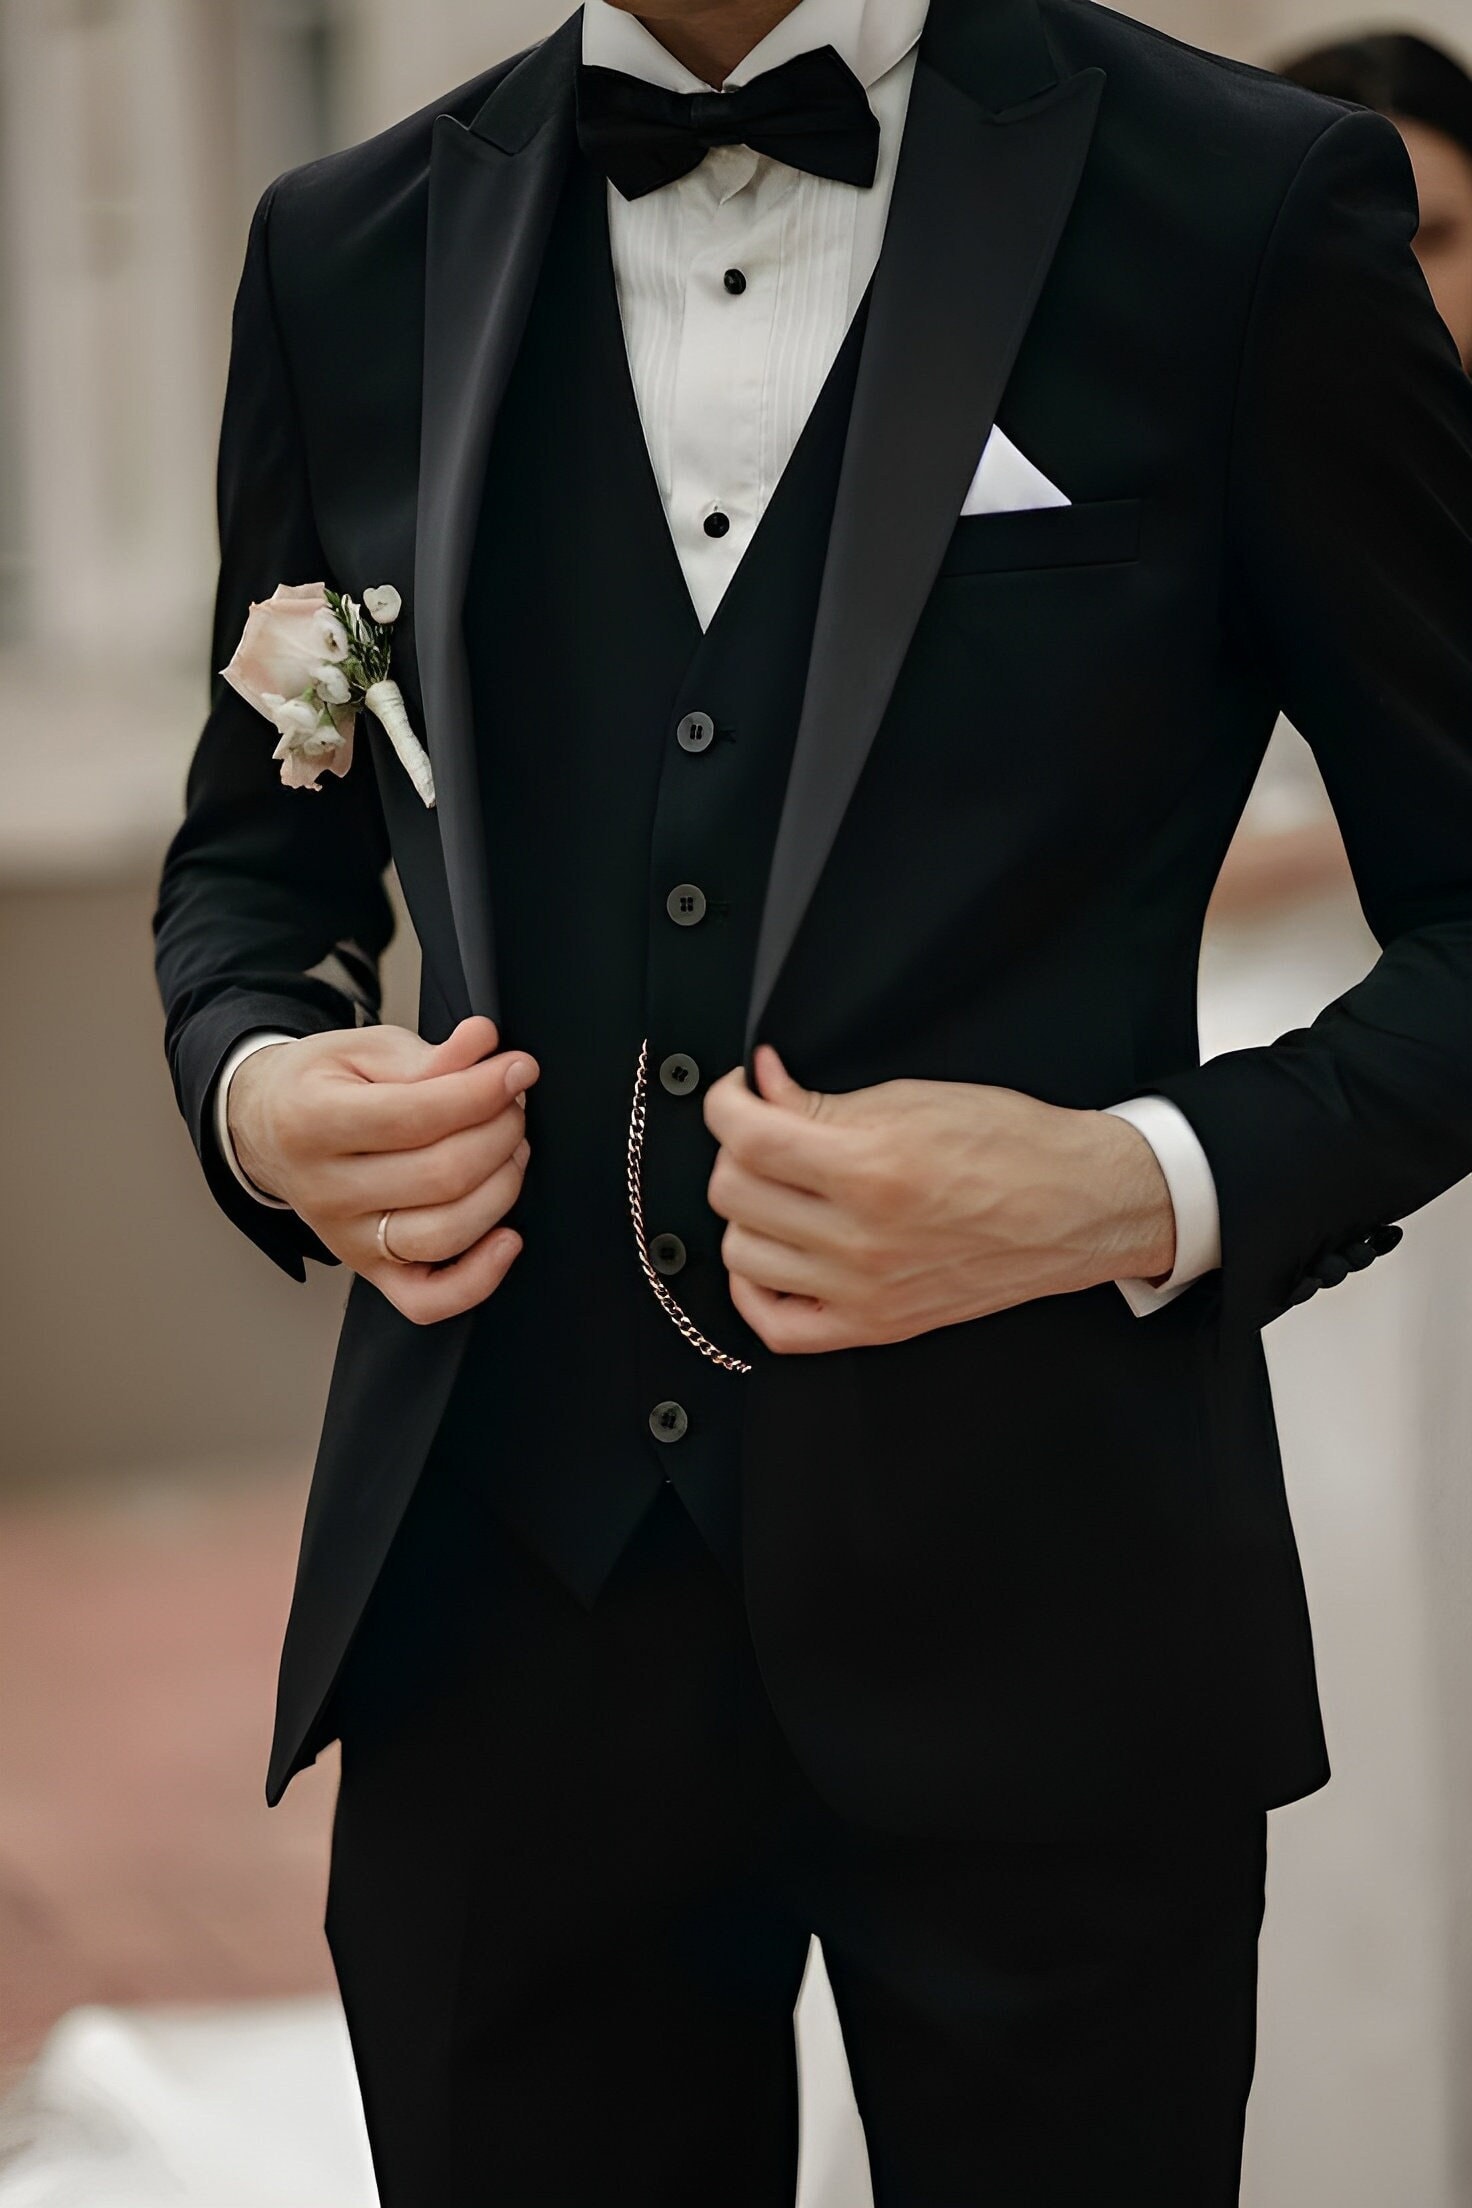 Men Suits Elegant Wedding Suit Wedding Clothing Black - Etsy